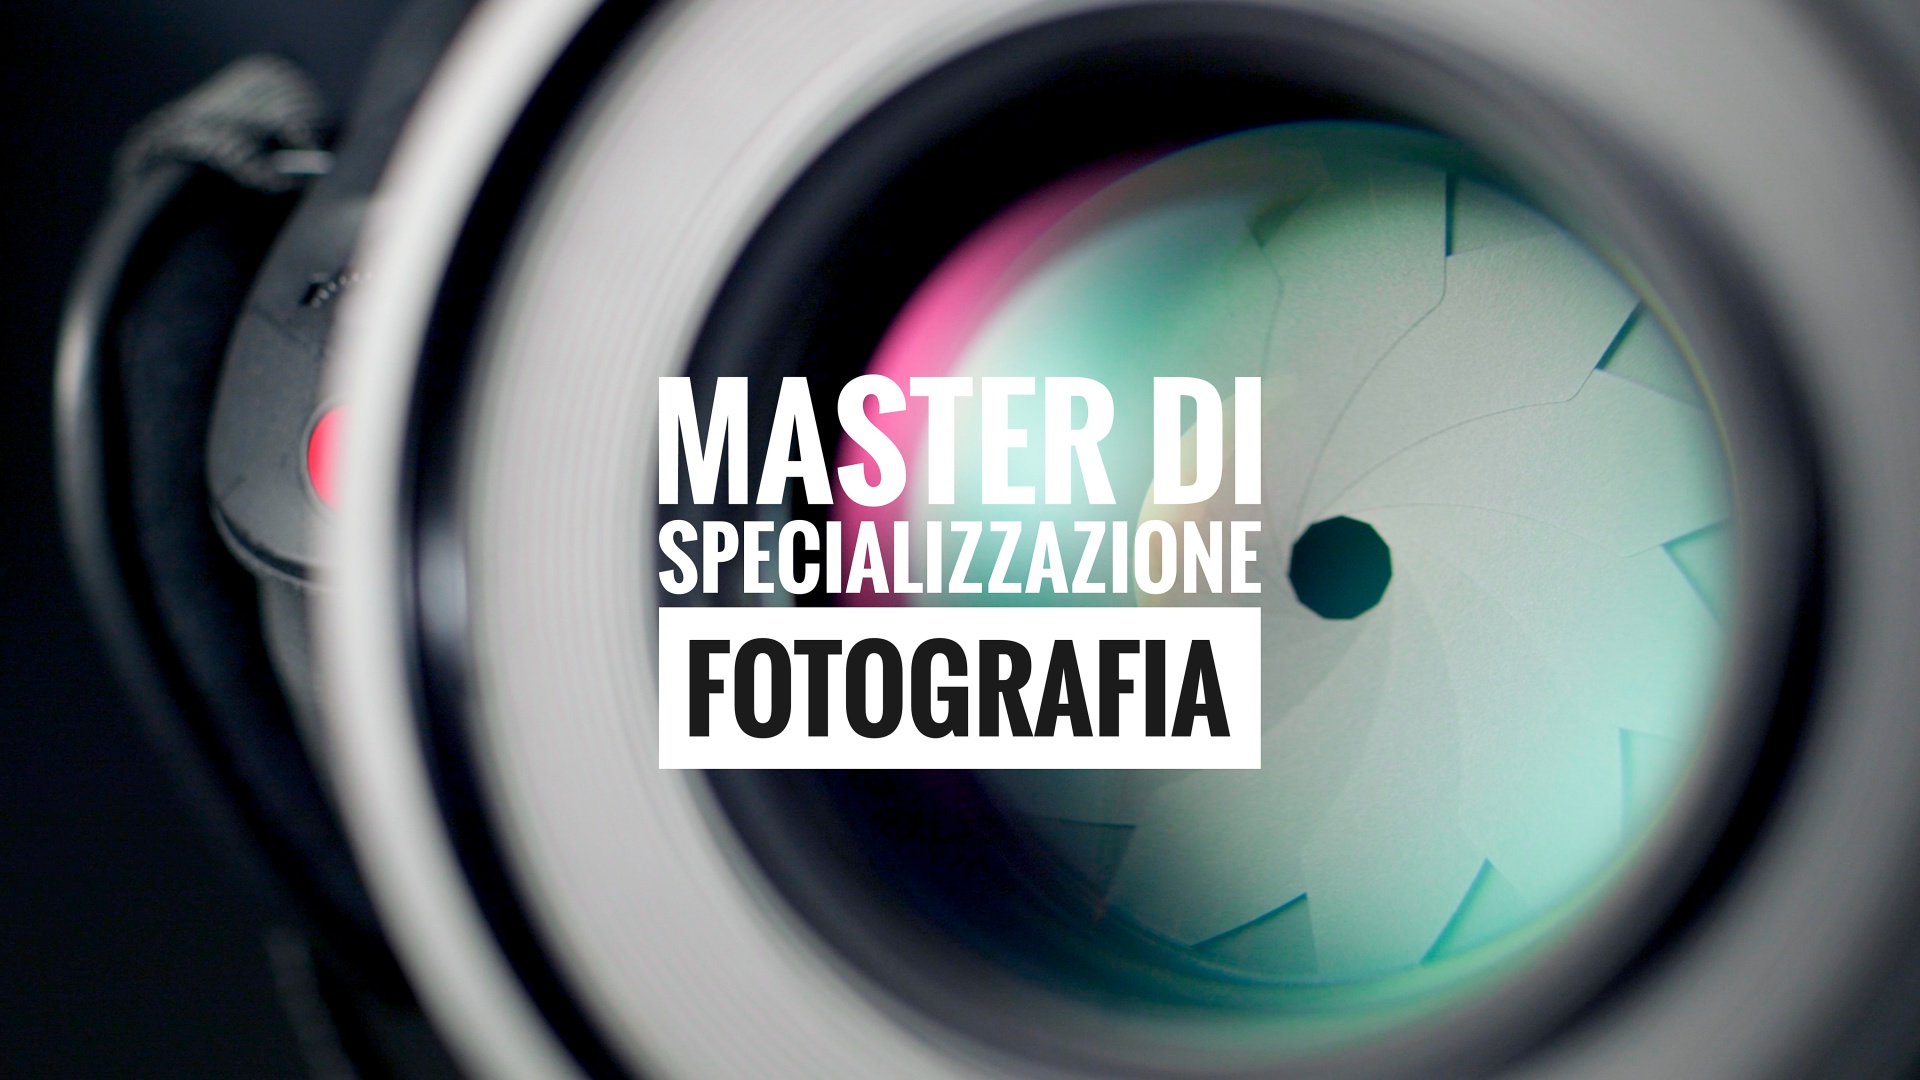 Master di specializzazione, I master di specializzazione di FPschool consentono di perfezionare specifici settori della fotografia risparmiando